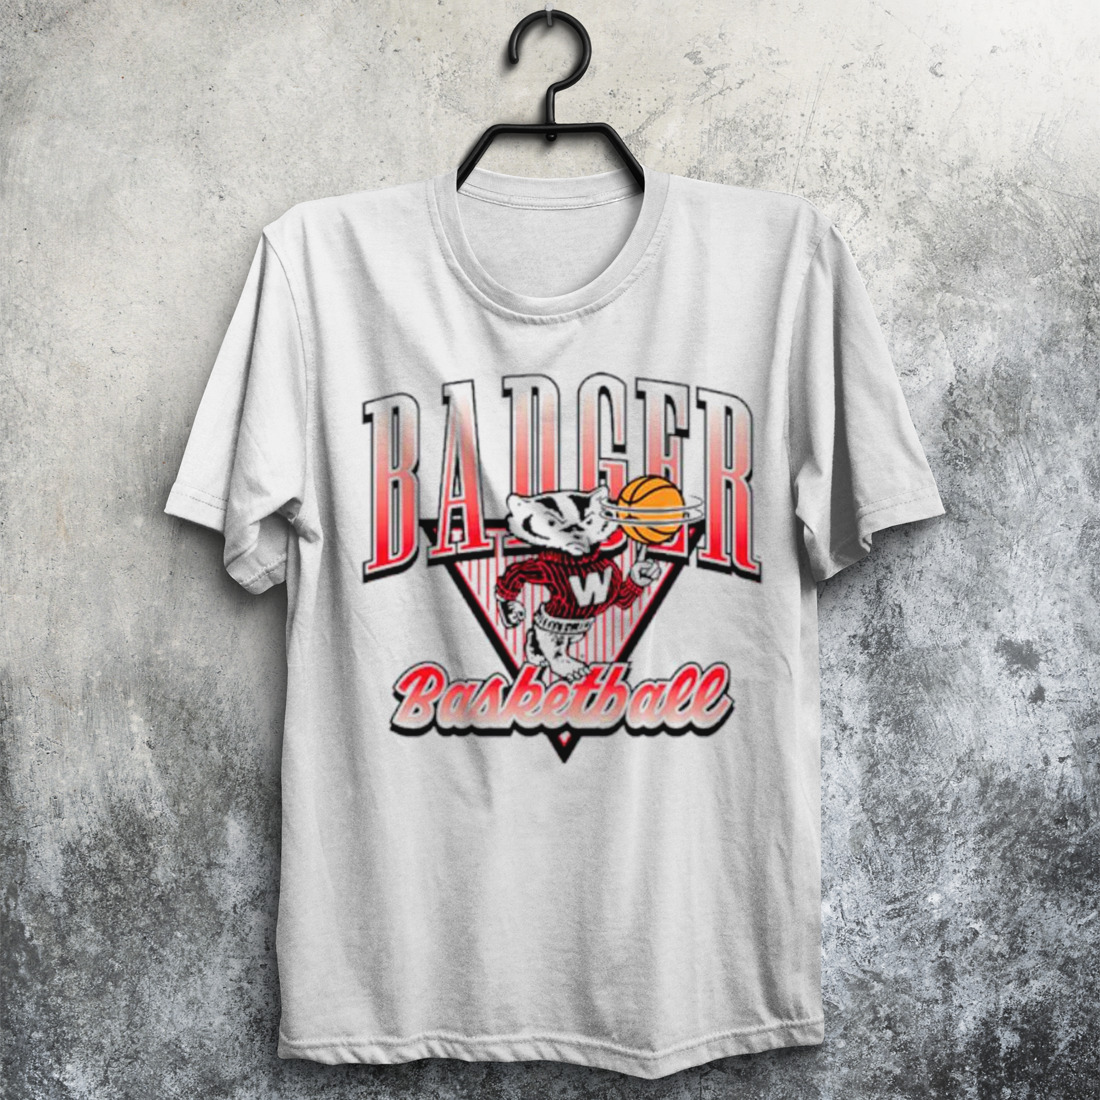 Wisconsin Badger basketball ringer shirt